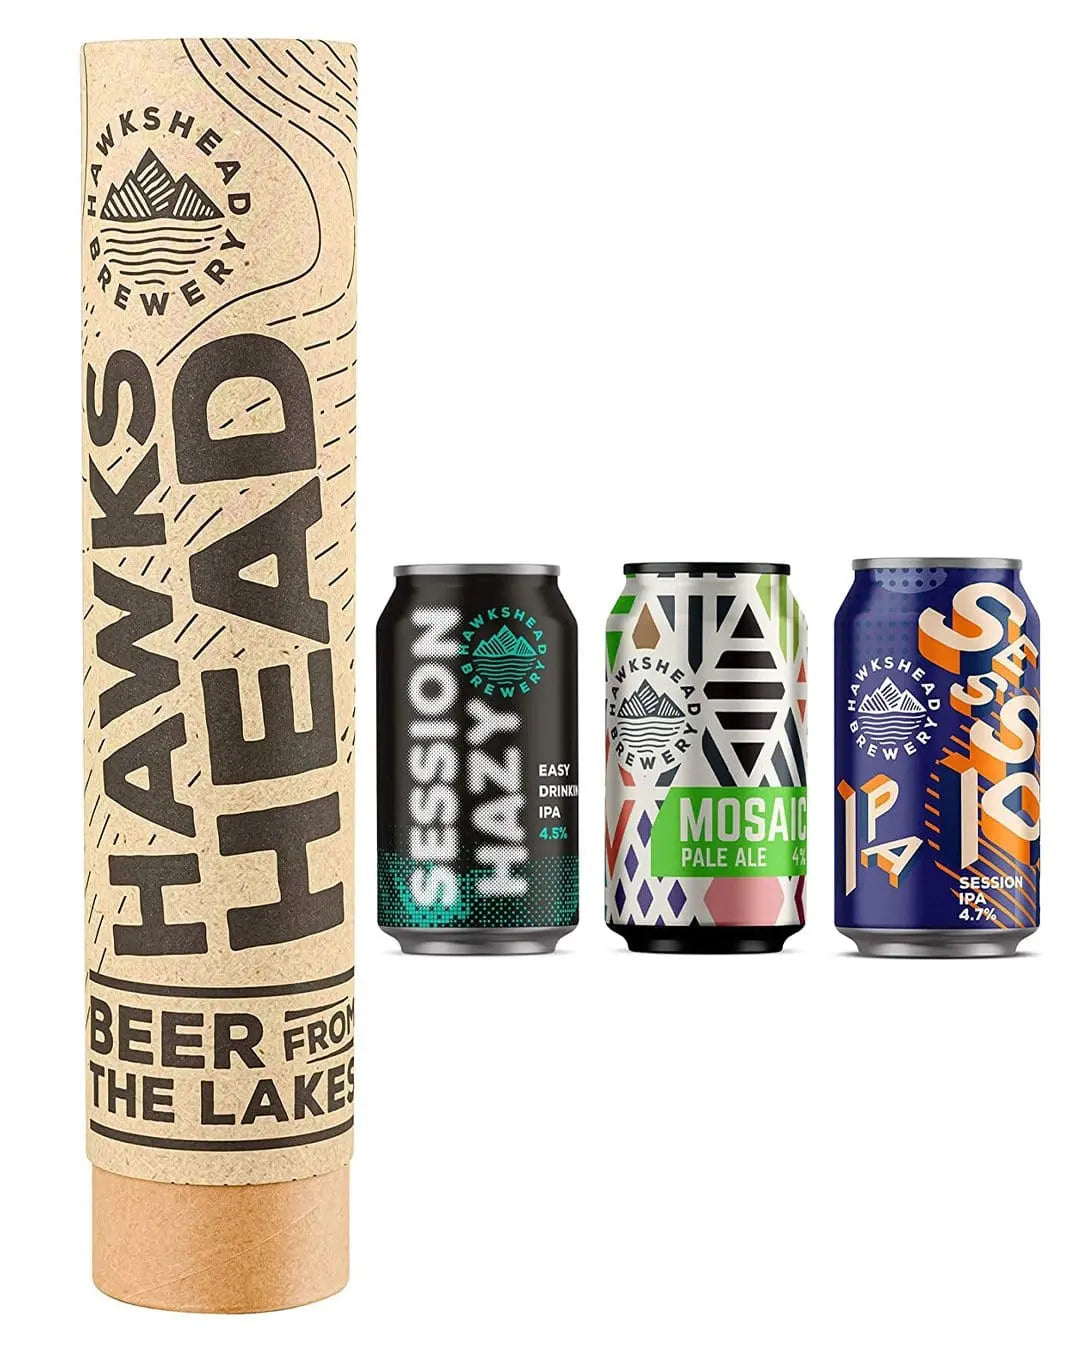 Hawkshead Brewery Beer Bullet Cans in Gift Tube, 3 x 330 ml Beer